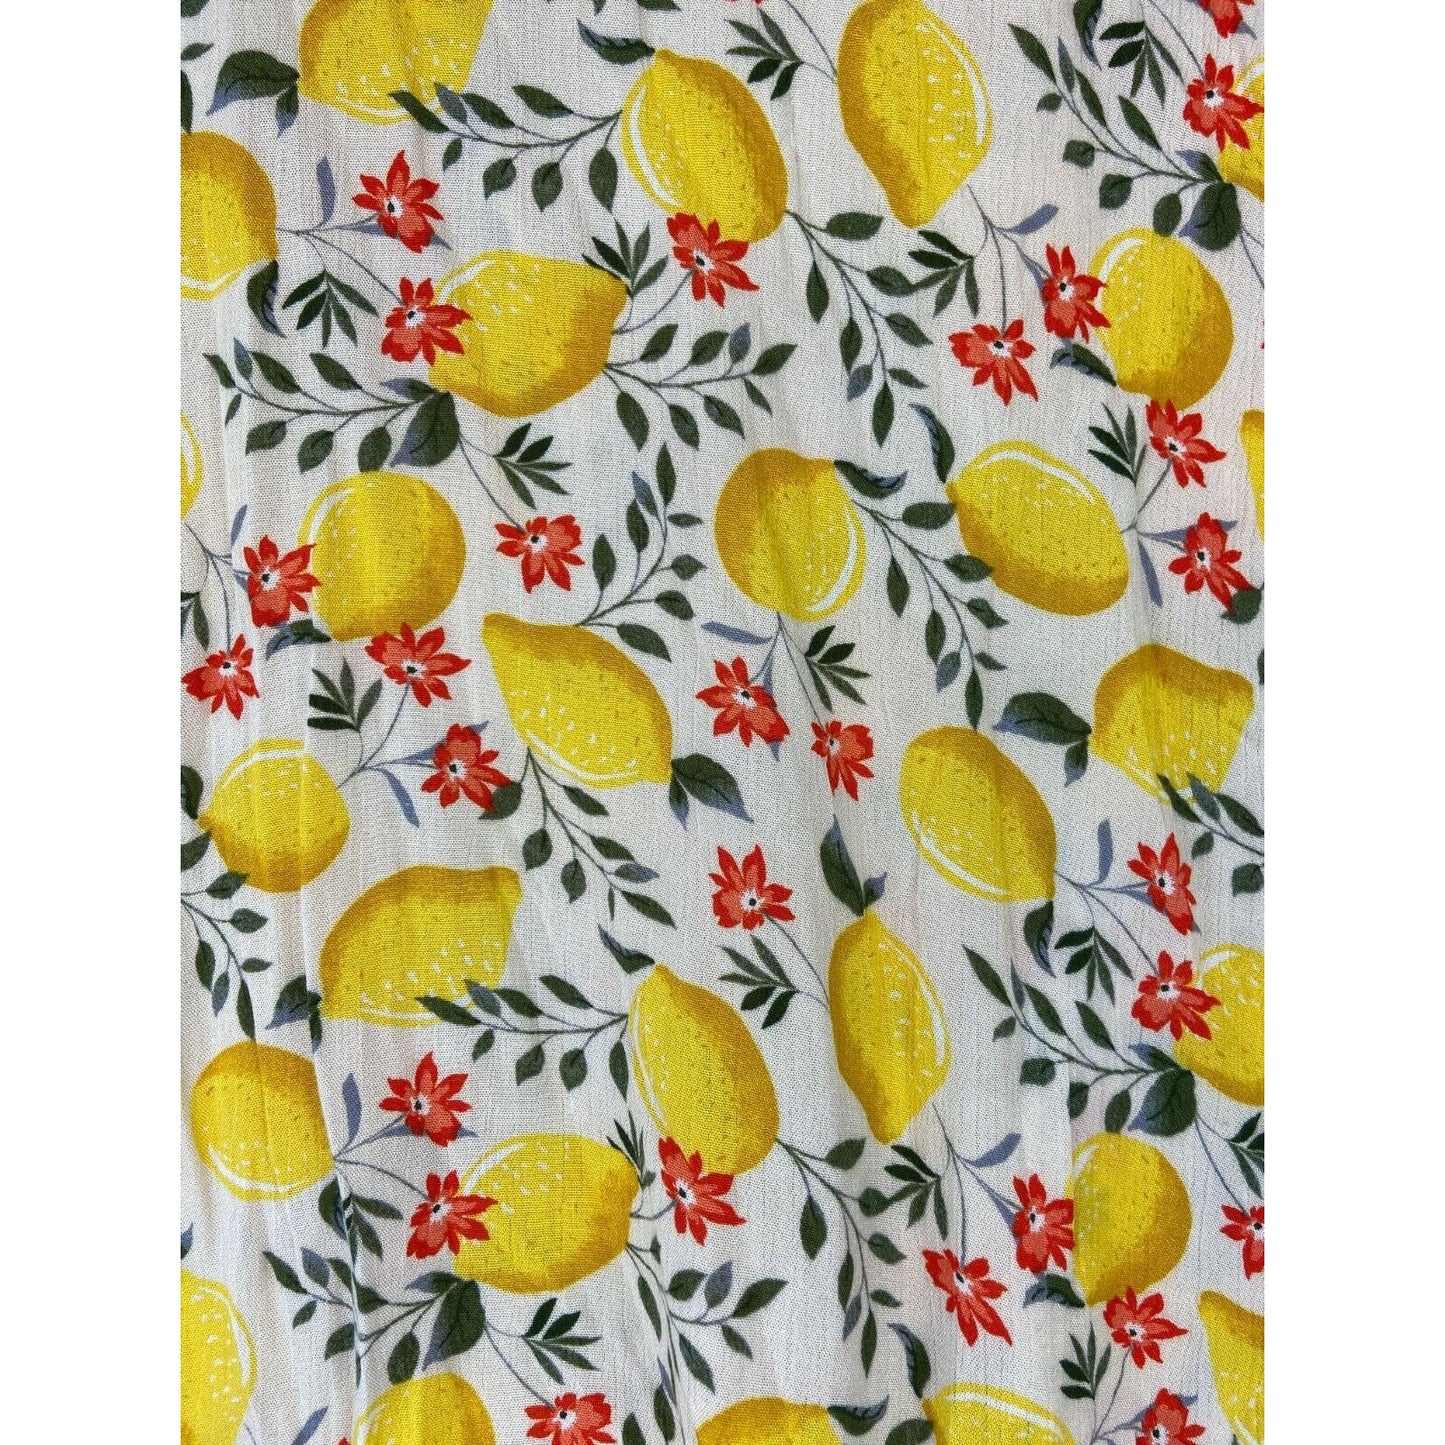 Lush Women's Lemon Print Top